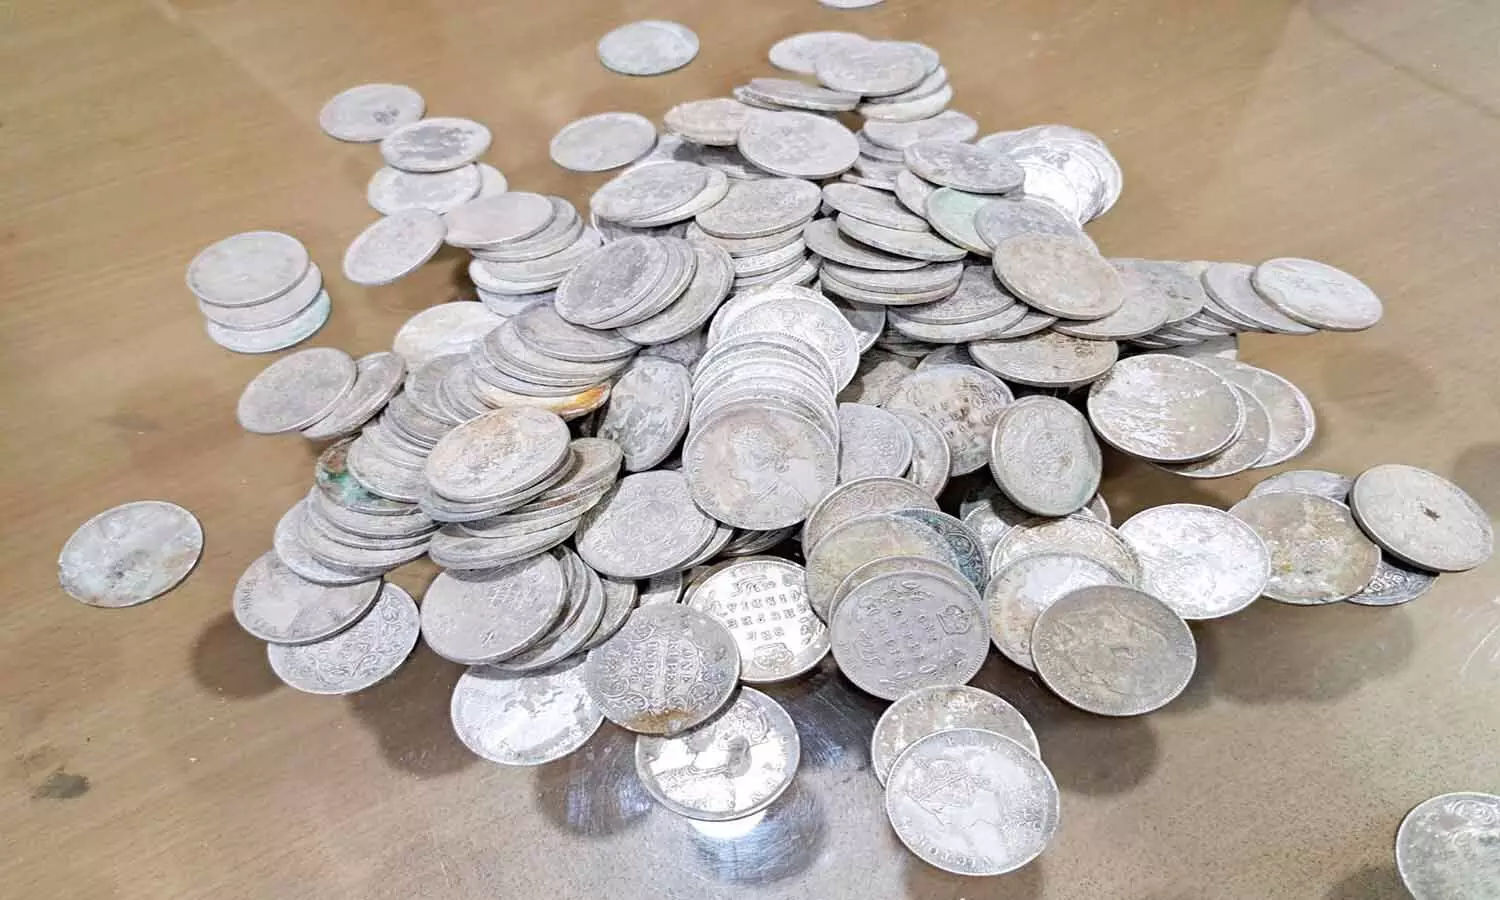 एमपी के दमोह में खुदाई के दौरान मिले ब्रिटिशकालीन 240 चांदी के सिक्के, लेबर ने थाने में करवाया जमा